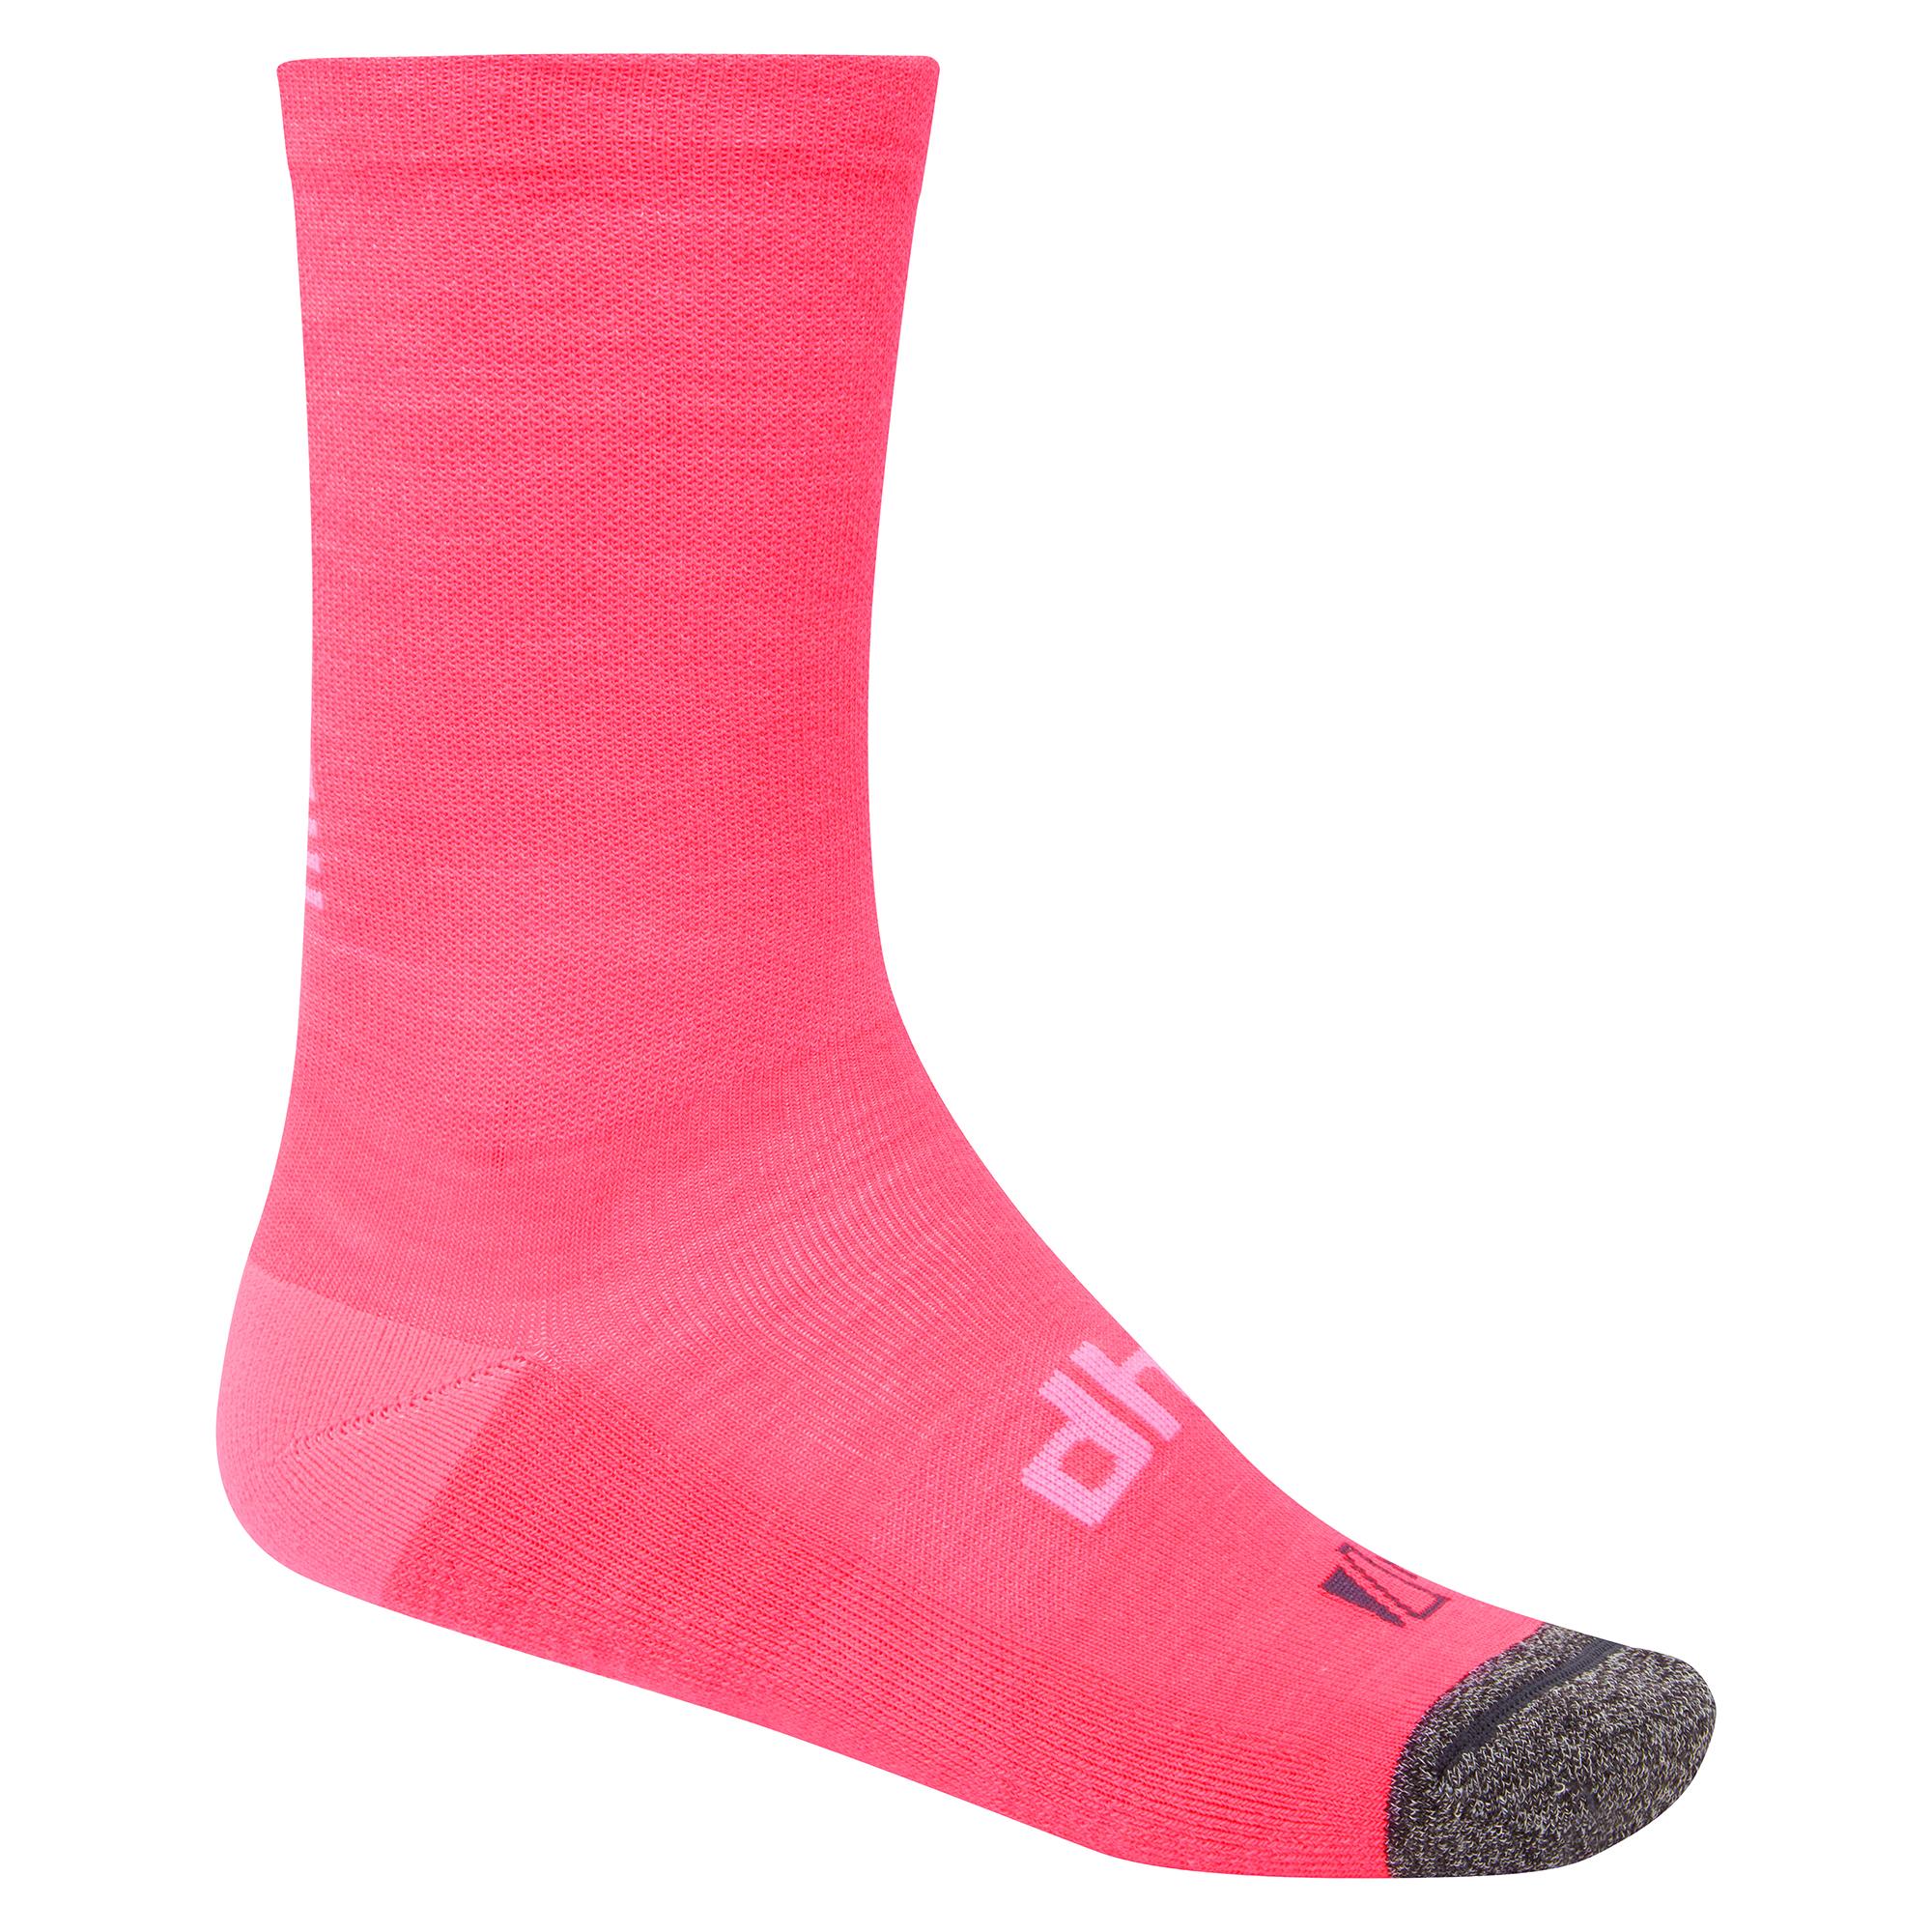 Dhb Aeron Womens Winter Merino Sock 2.0 - Pink